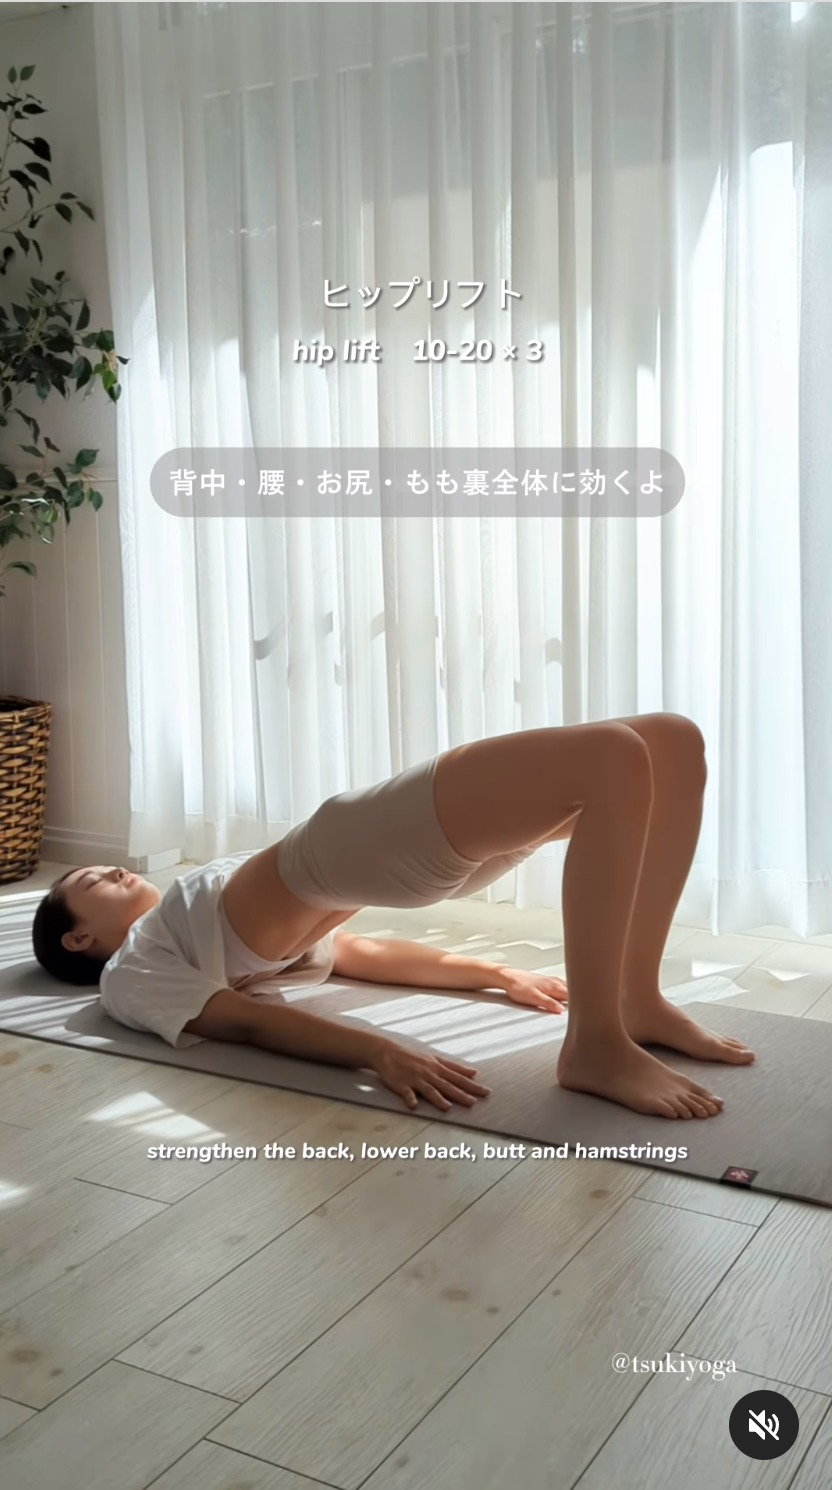 Siết mỡ đón Tết: 5 động tác Yoga đốt mỡ bụng, mỡ lưng hiệu quả ngay tại nhà - Ảnh 10.